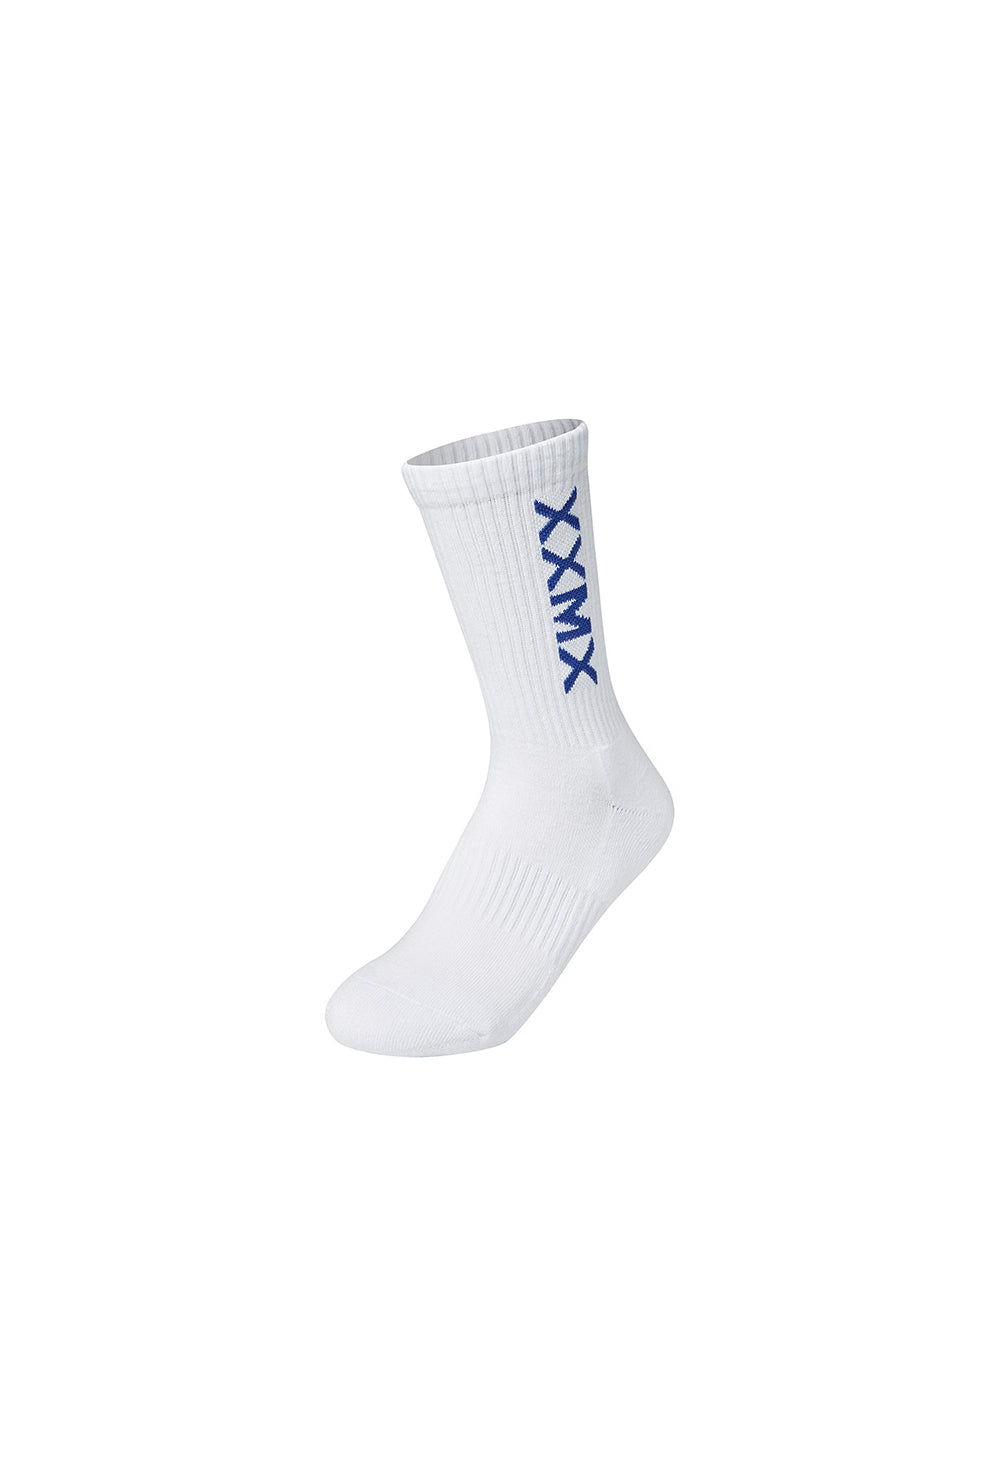 XEXYMIX Logo Crew Socks - Blue